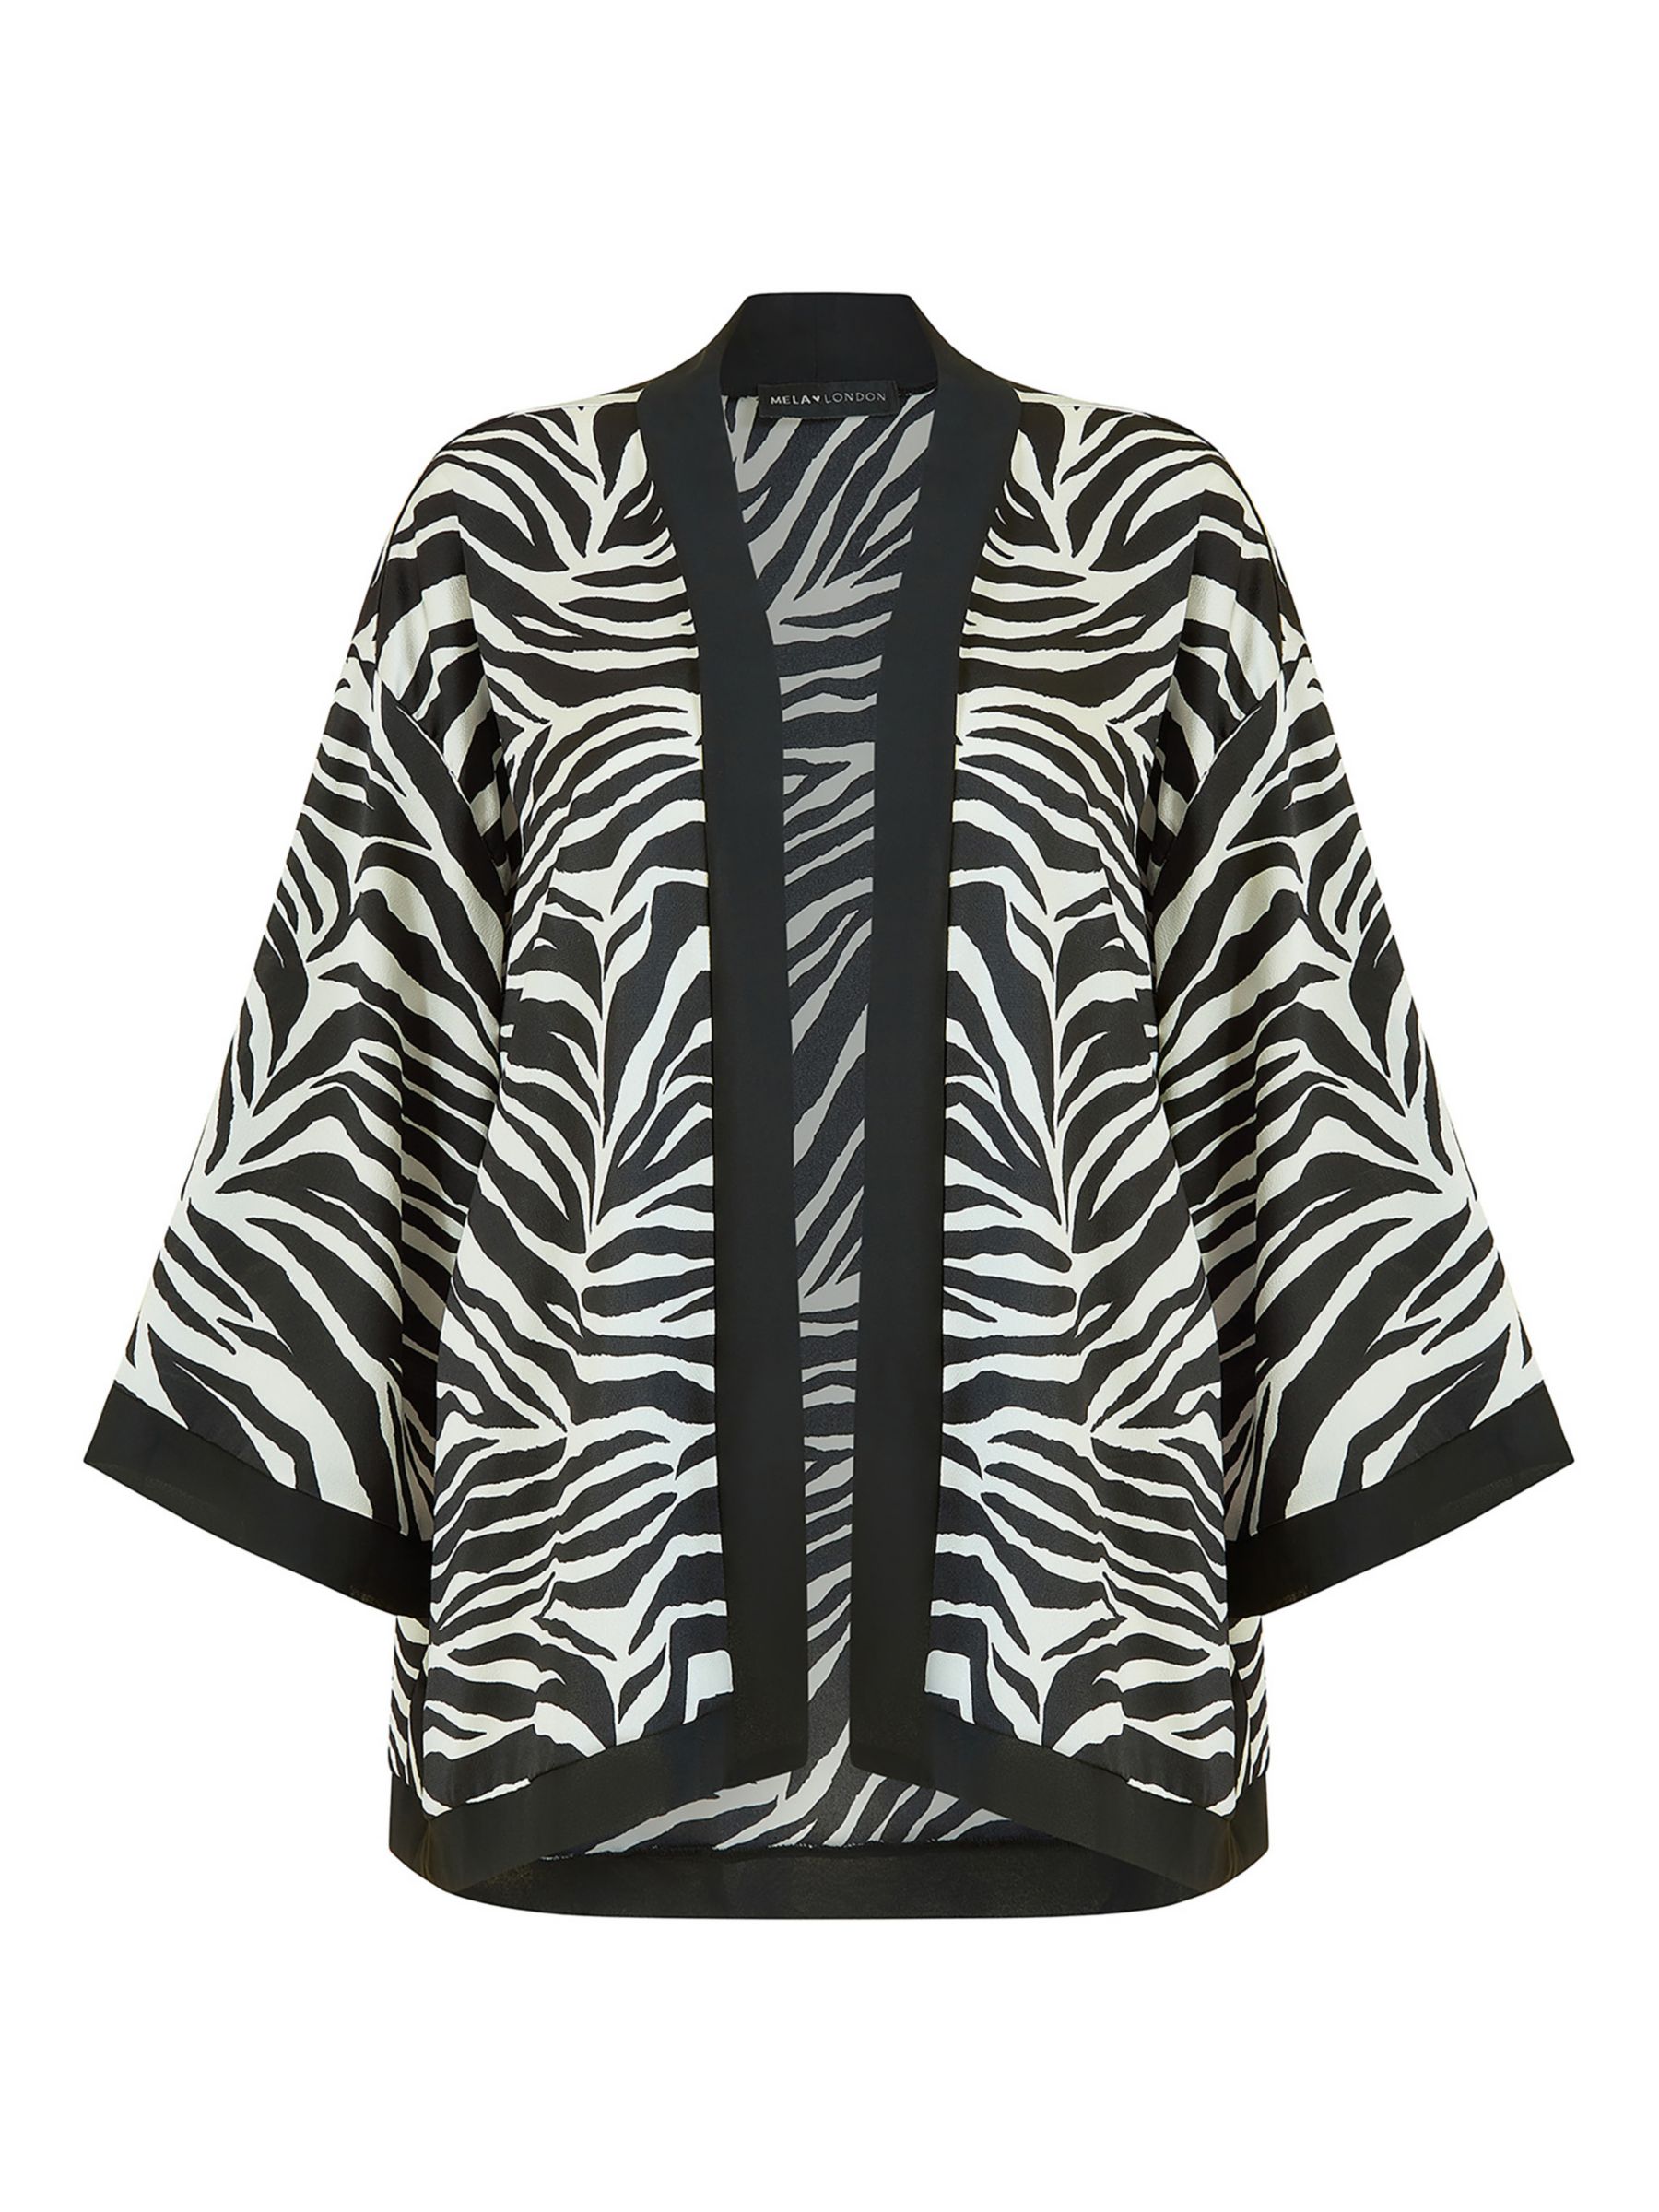 Mela London Zebra Print Satin Kimono, Black/White, 8